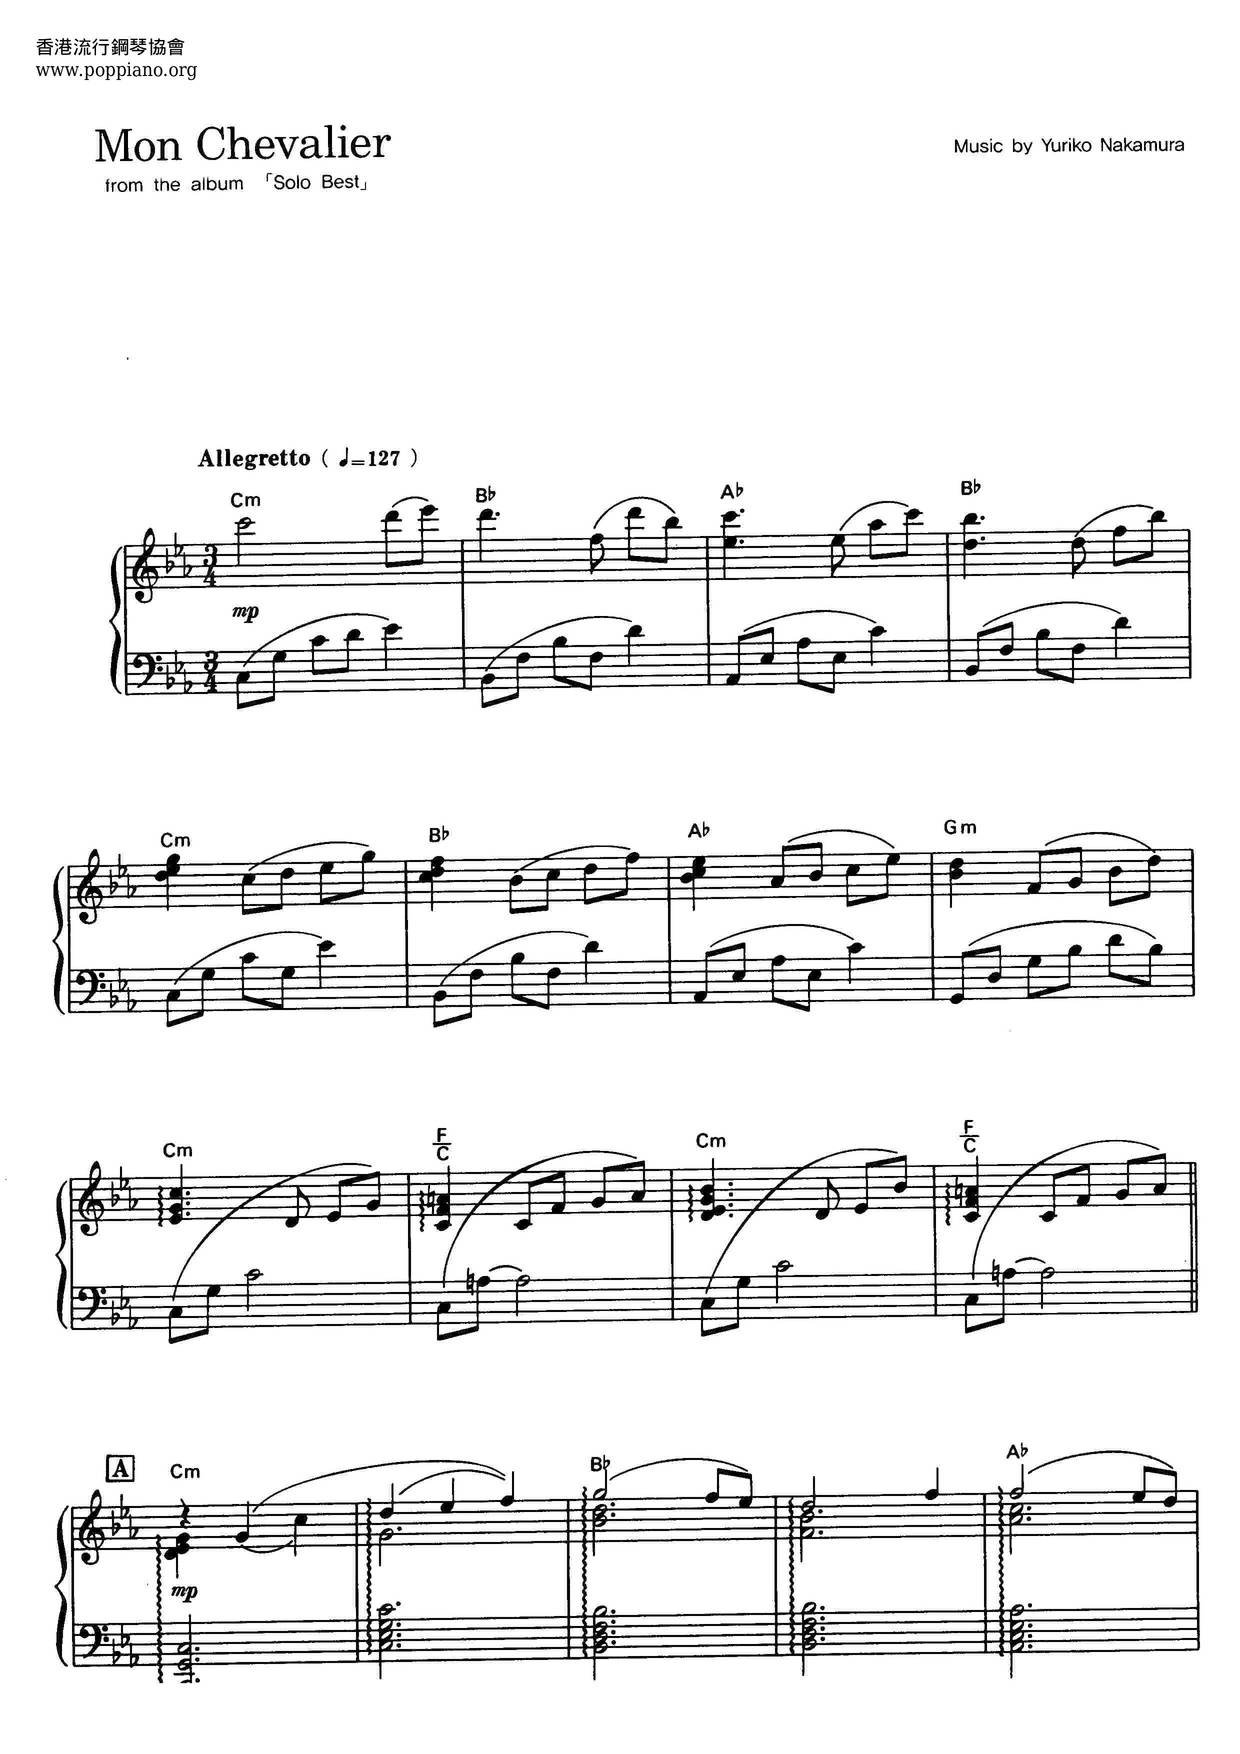 Mon Chevalierピアノ譜